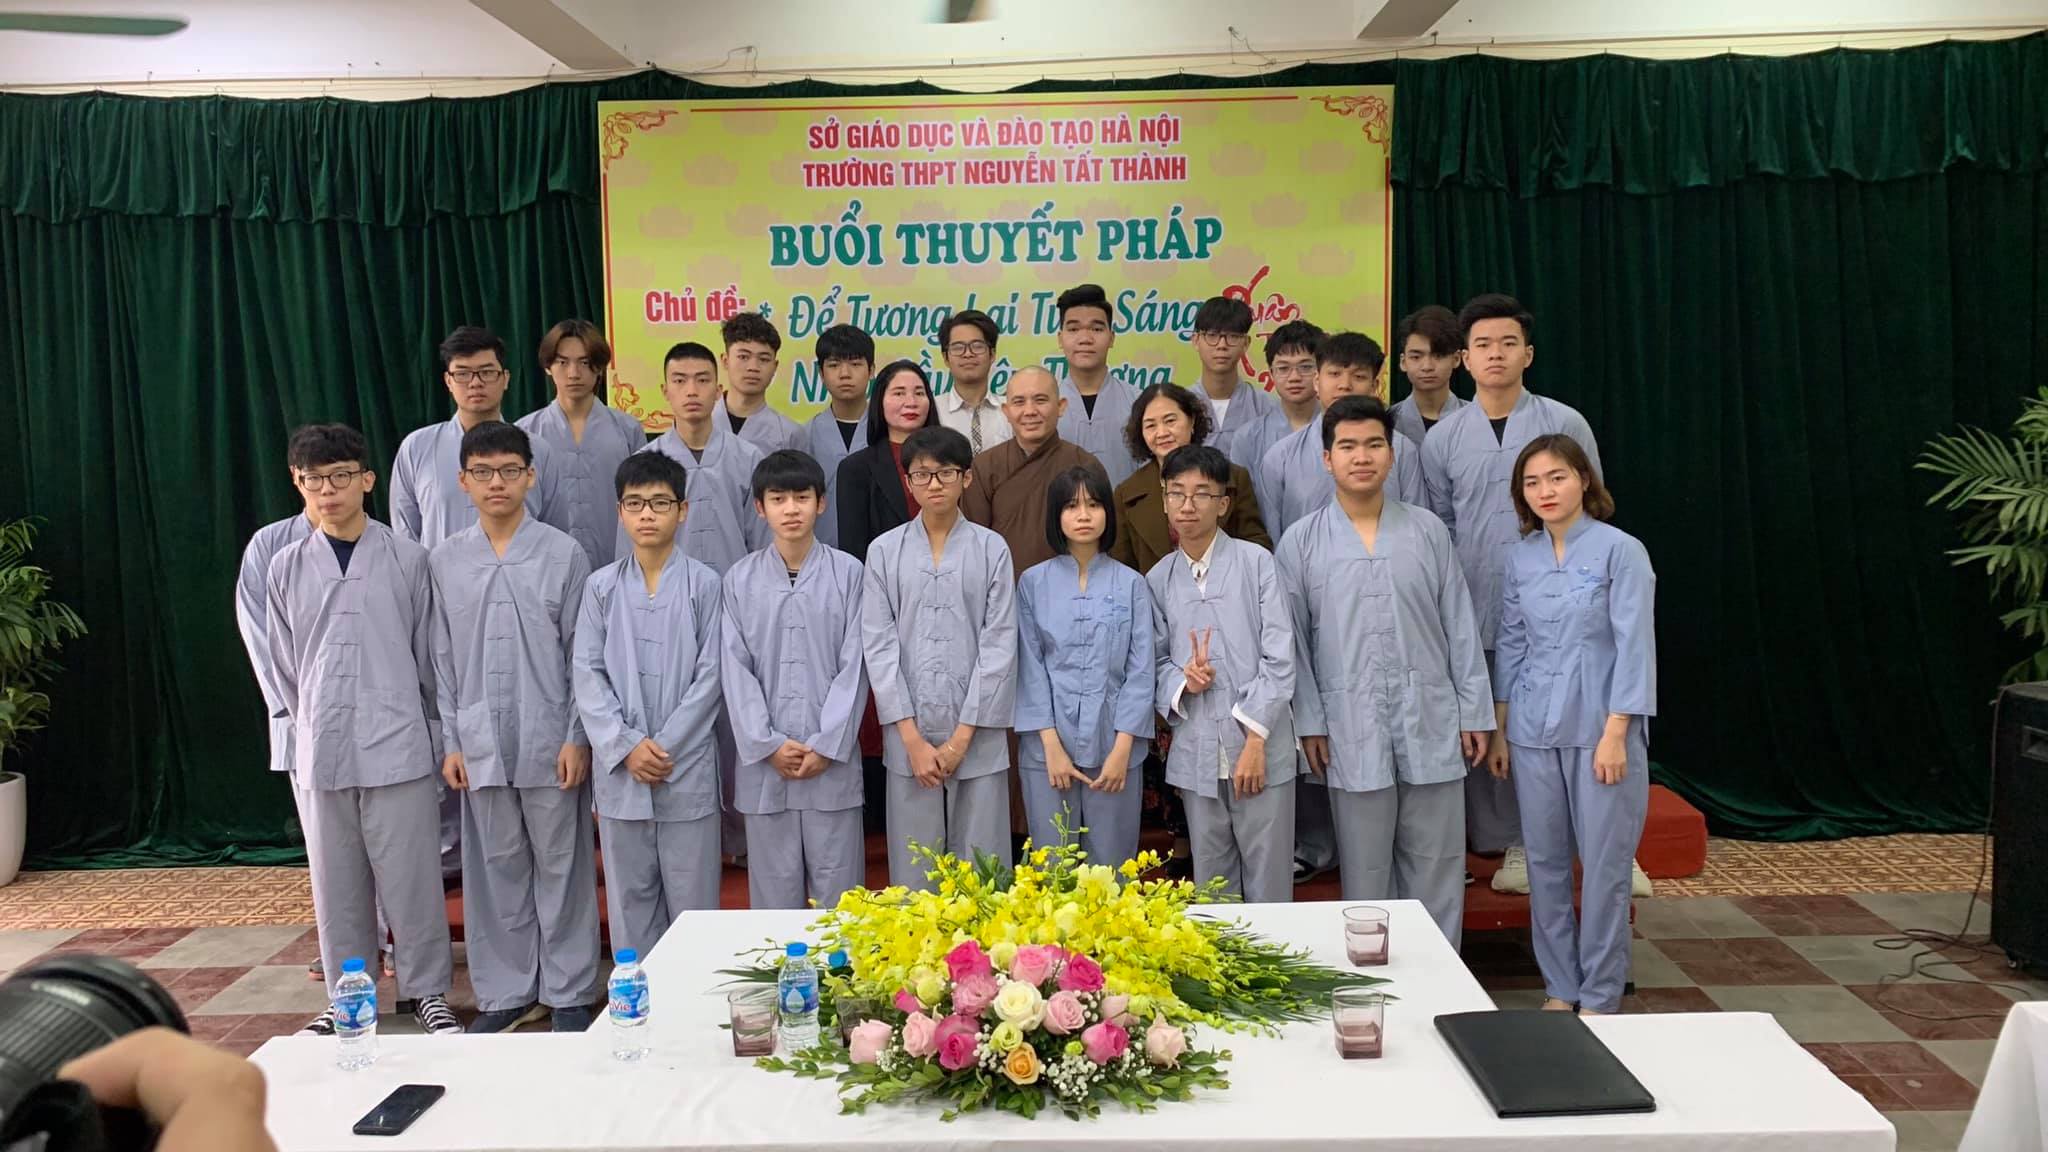 Thầy và trò trường THPT Nguyễn Tất Thành trong buổi thuyết pháp